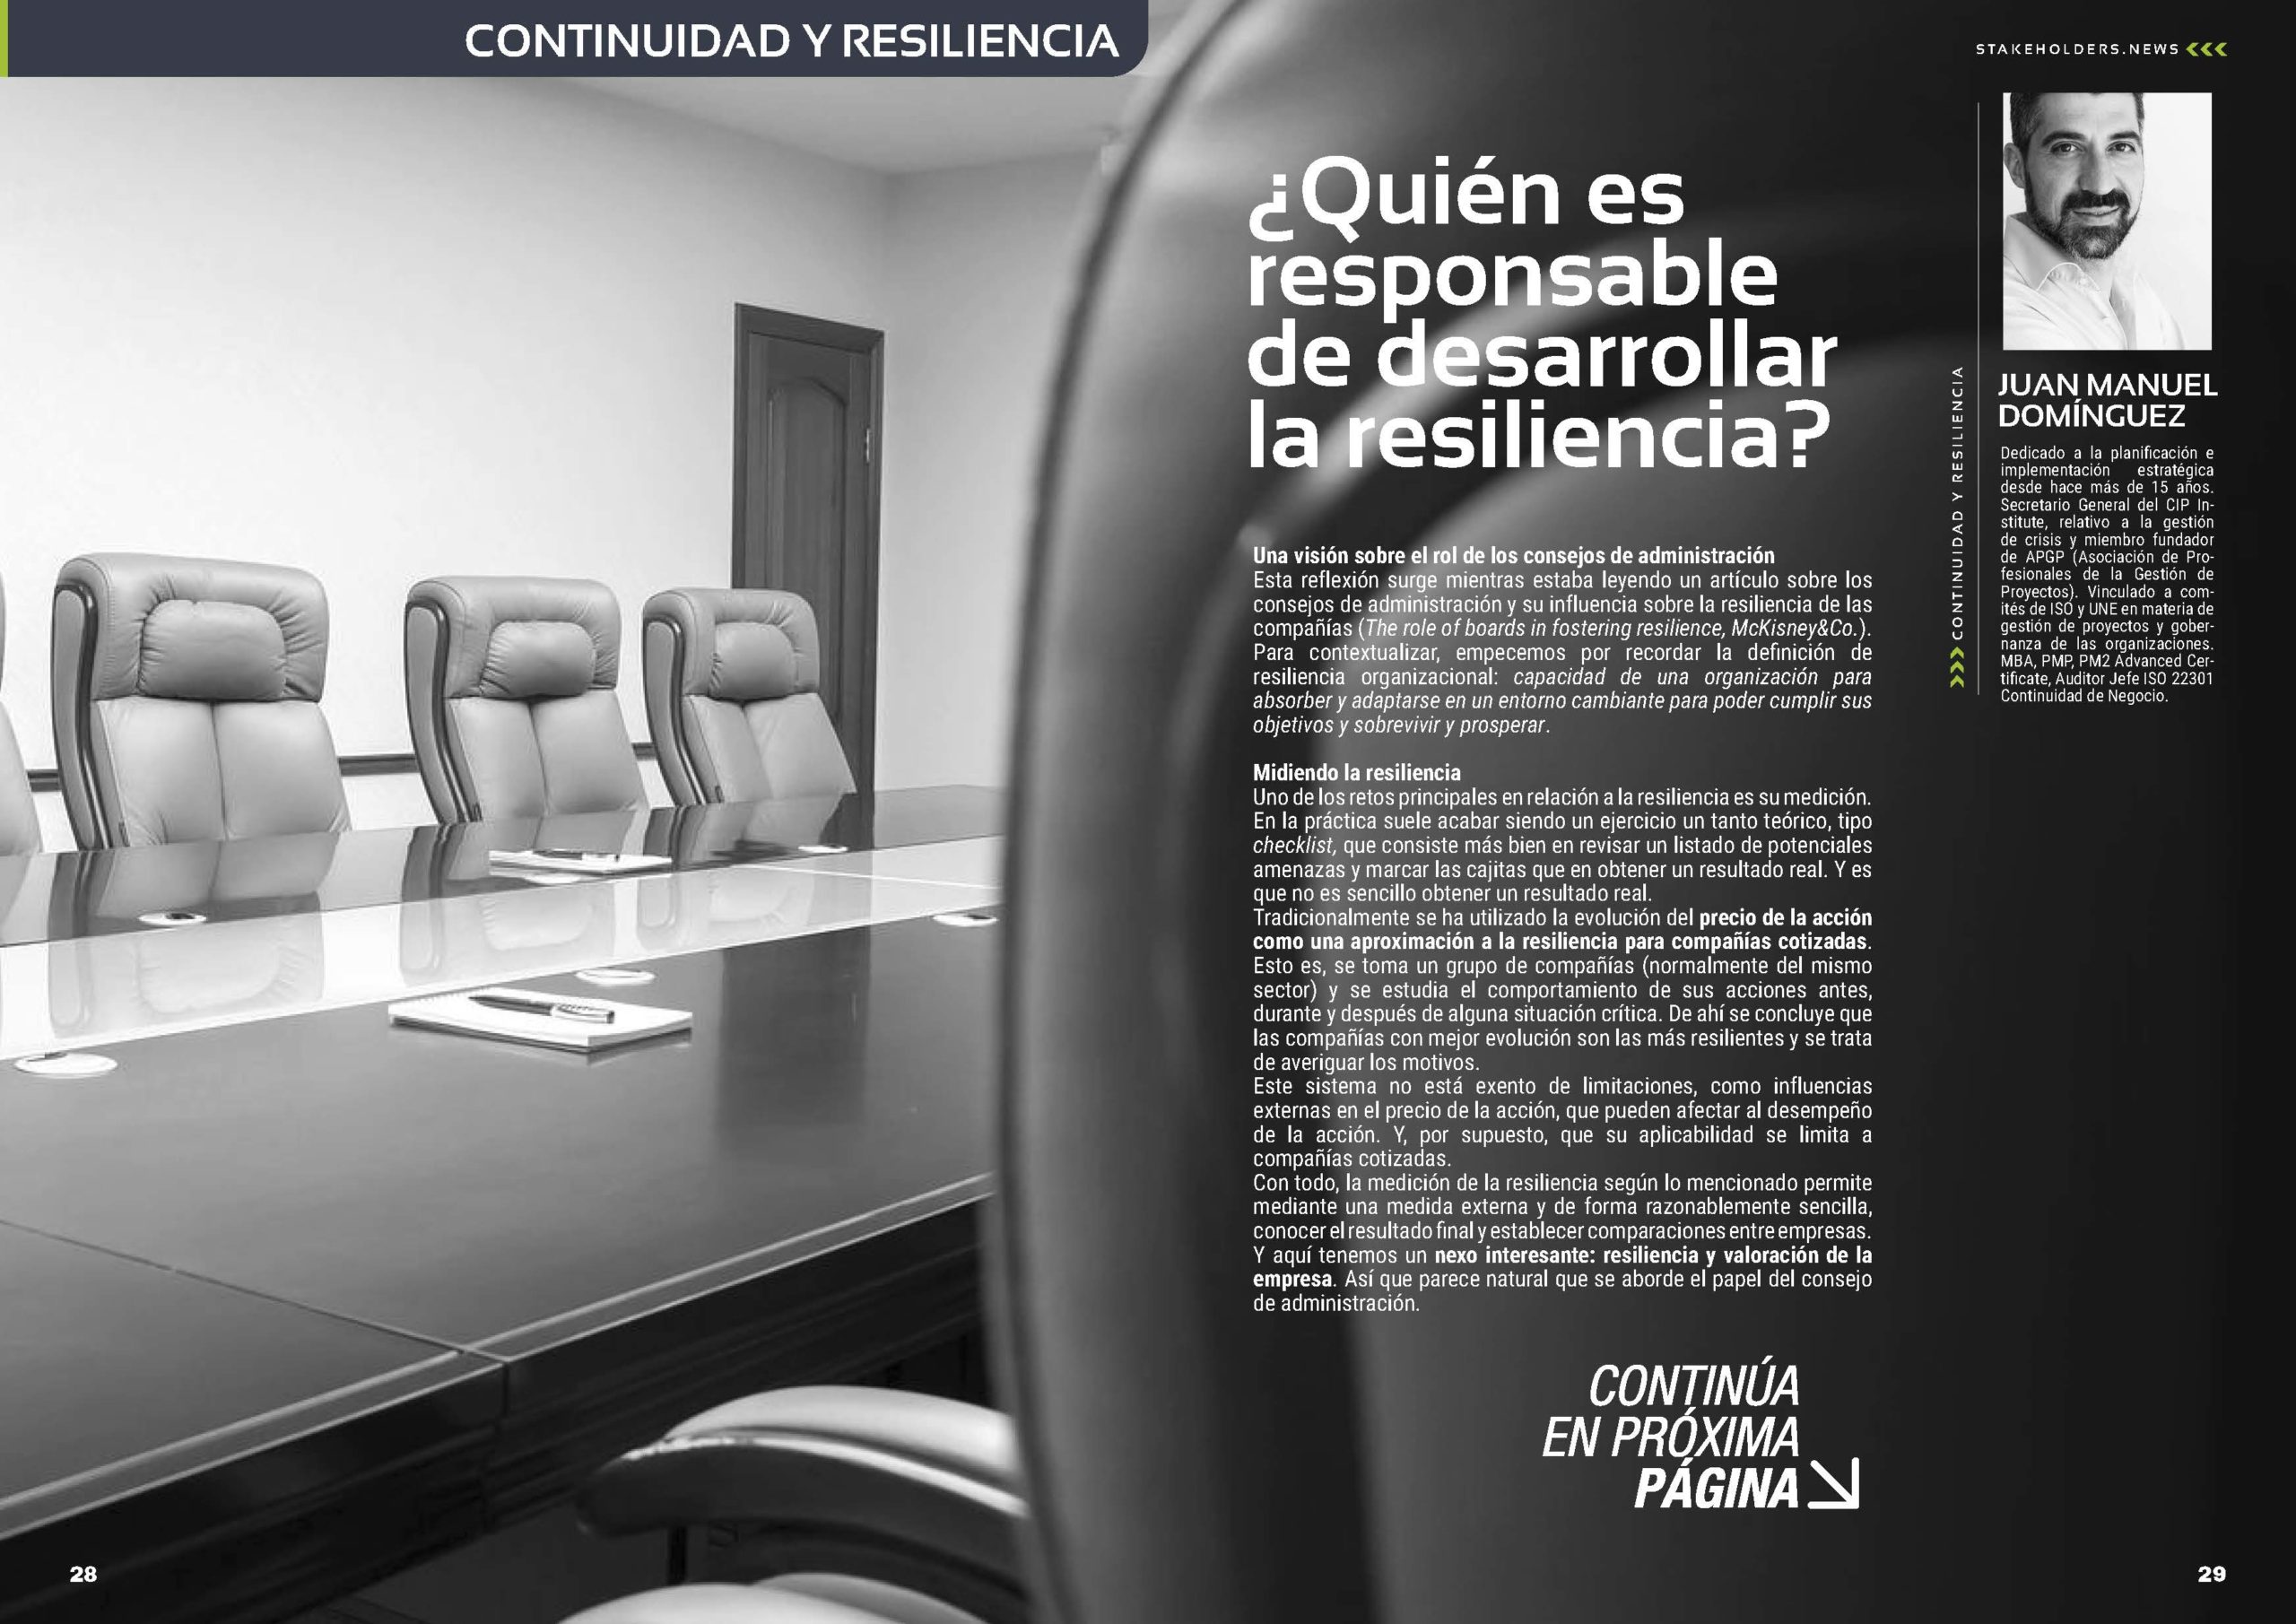 Articulo "¿Quién es responsable de desarrollar la resiliencia?" de Juan Manuel Dominguez en la Sección "Continuidad y Resliencia" de la Revista Stakeholders.news